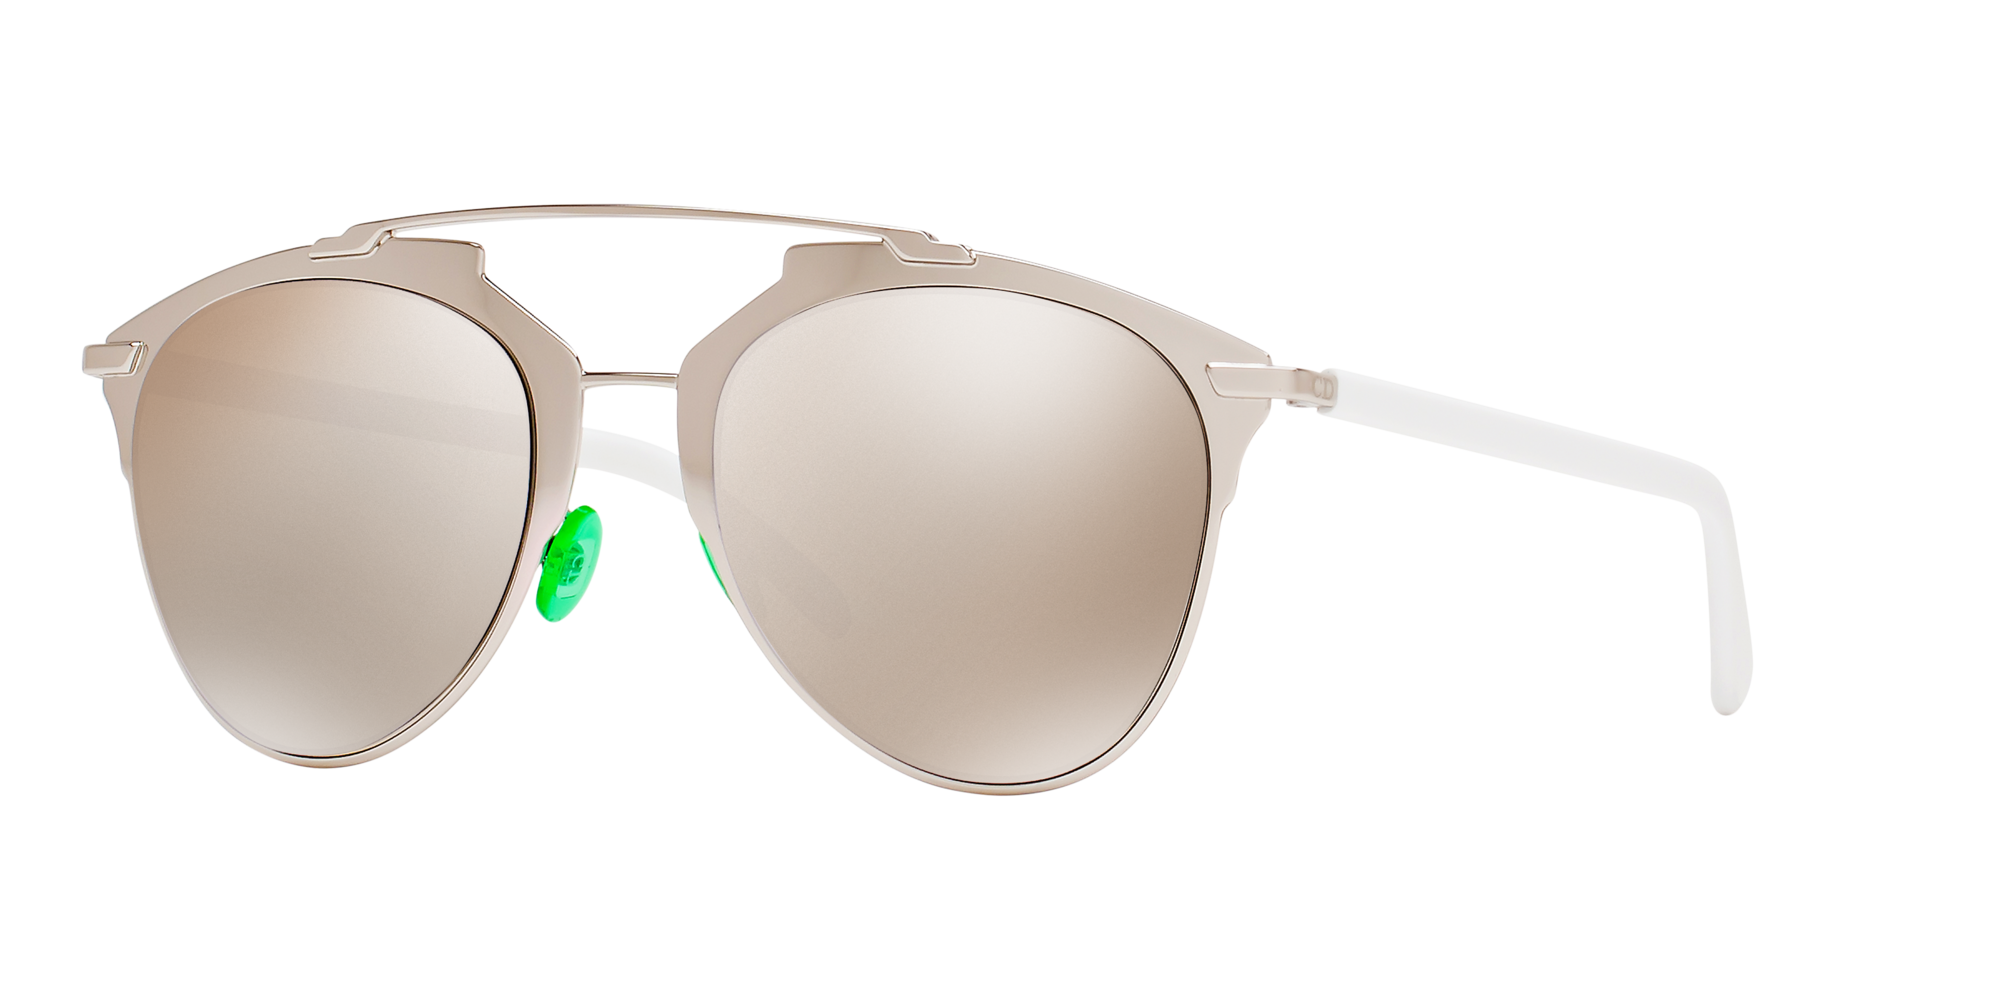 dior sunglasses price list